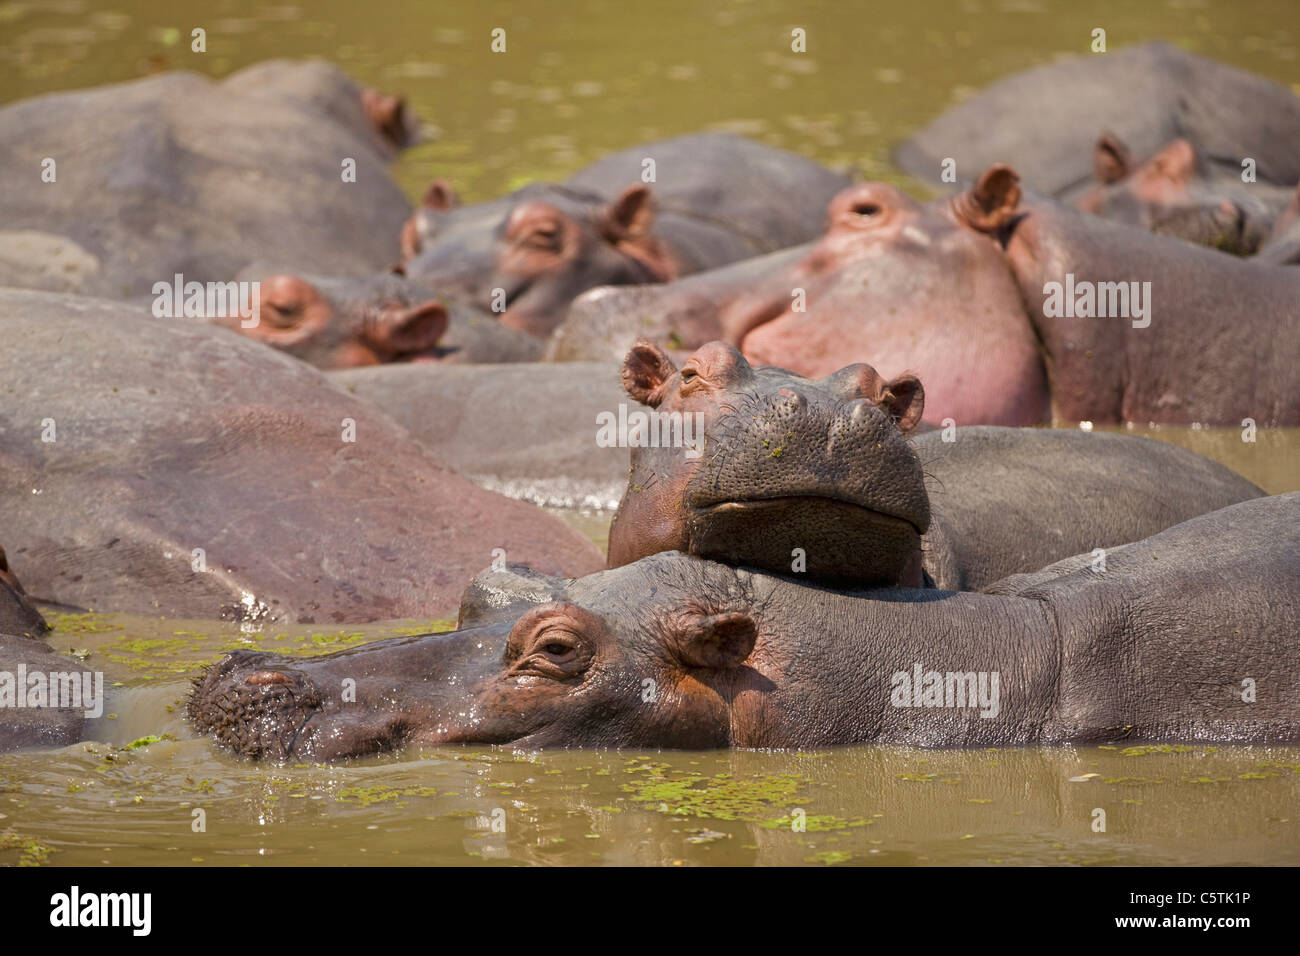 L'Afrique, Sambia, Groupe d'hippopotames (Hippopotamus amphibius) en eau Banque D'Images